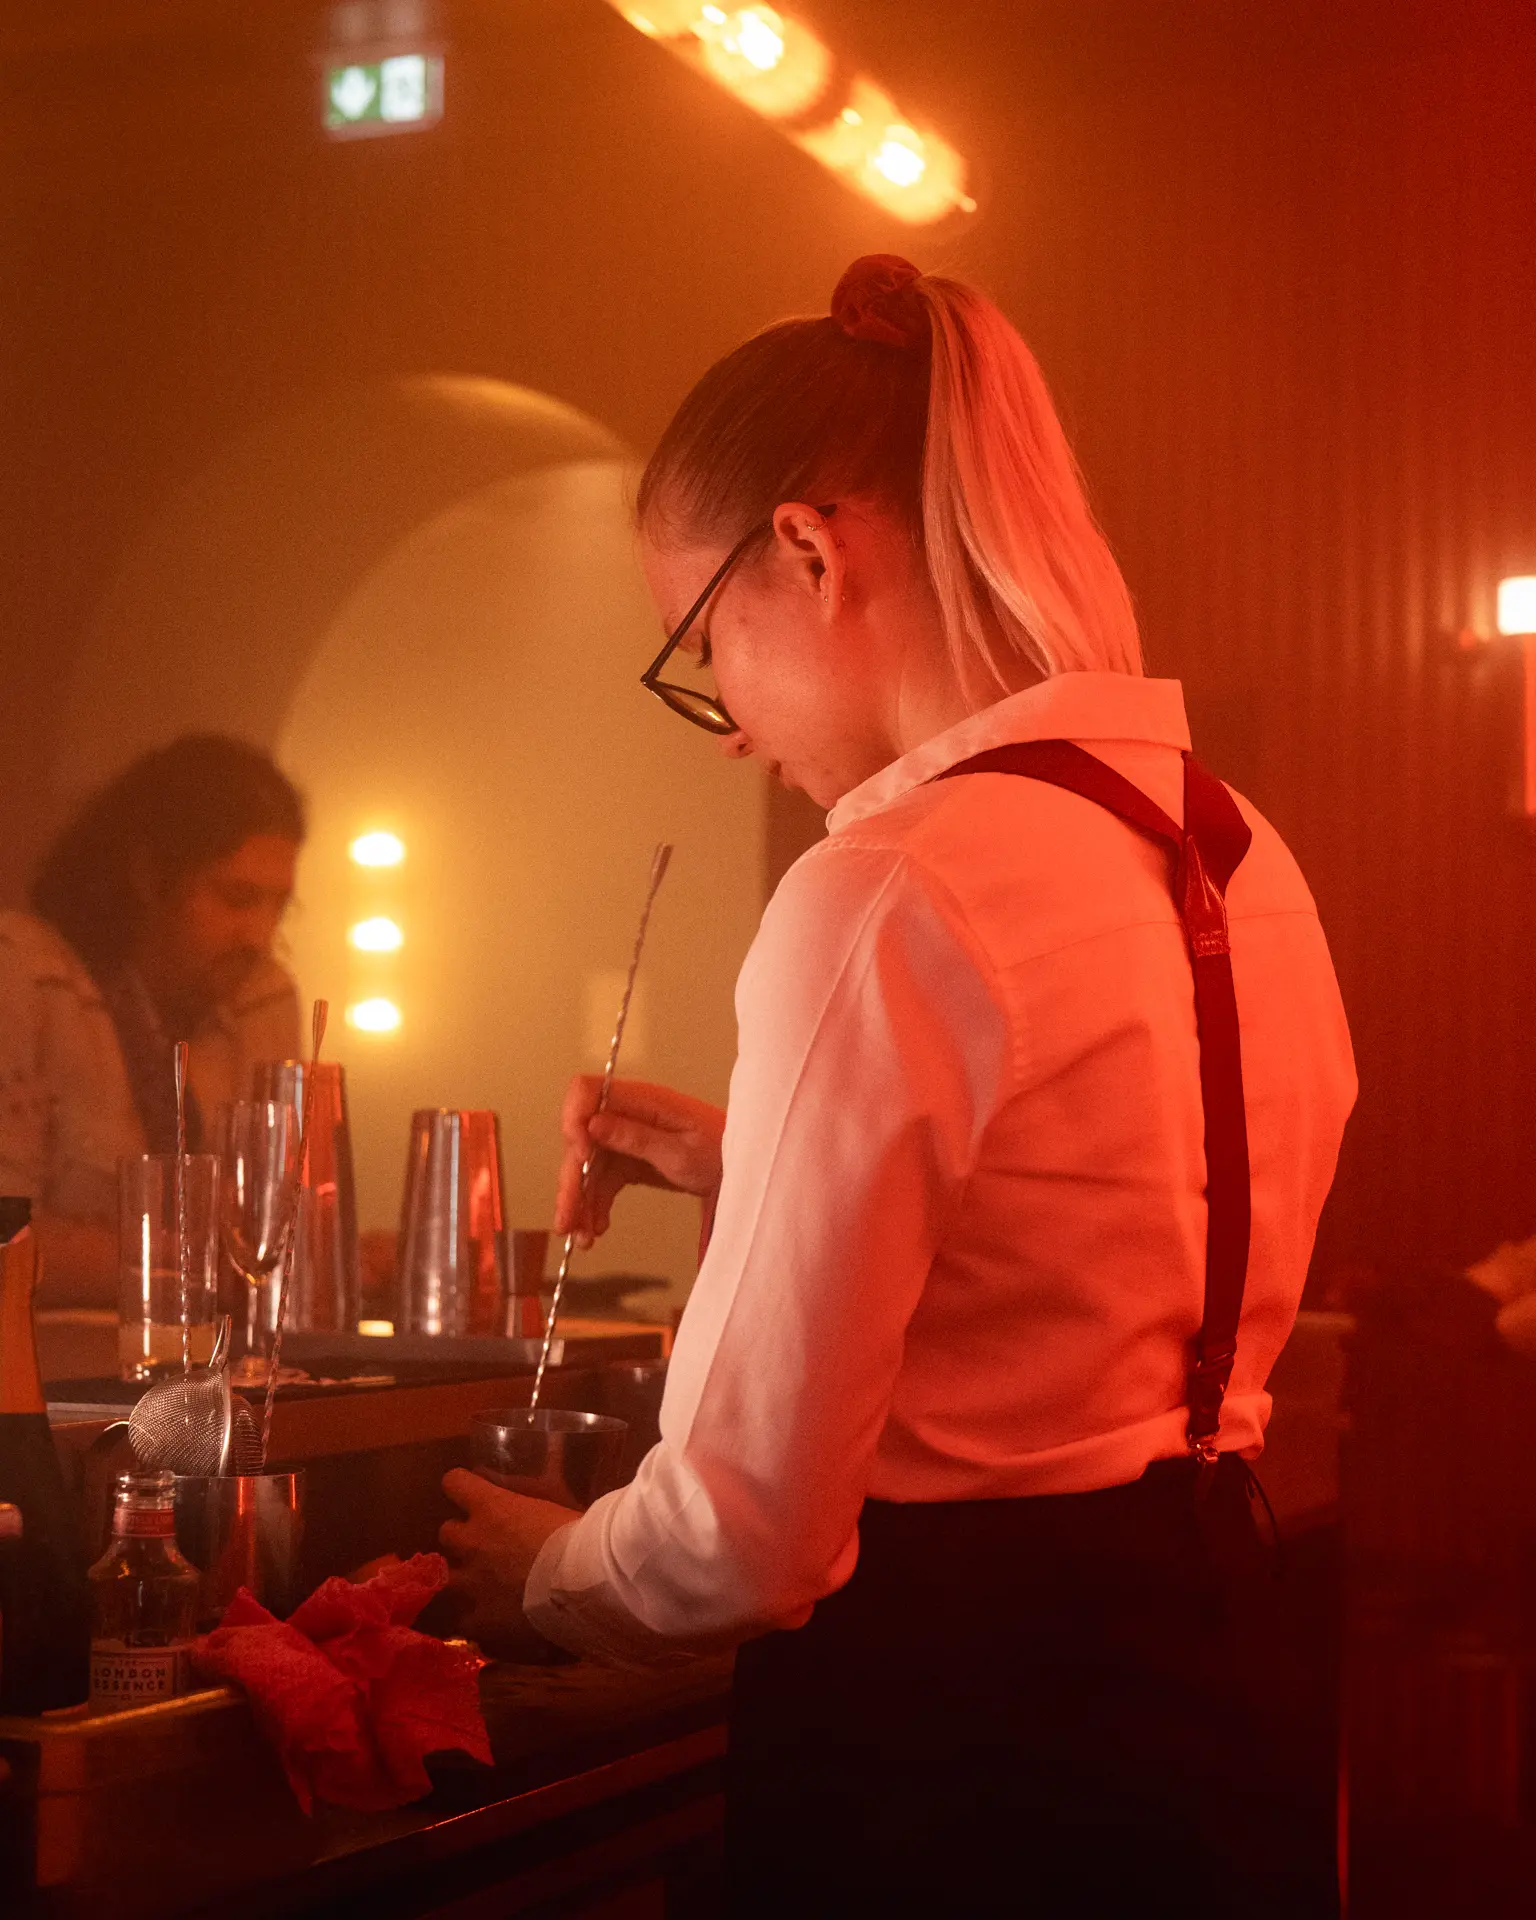 Barmaid préparant un cocktail - jyp-production - photographe strasbourg alsace